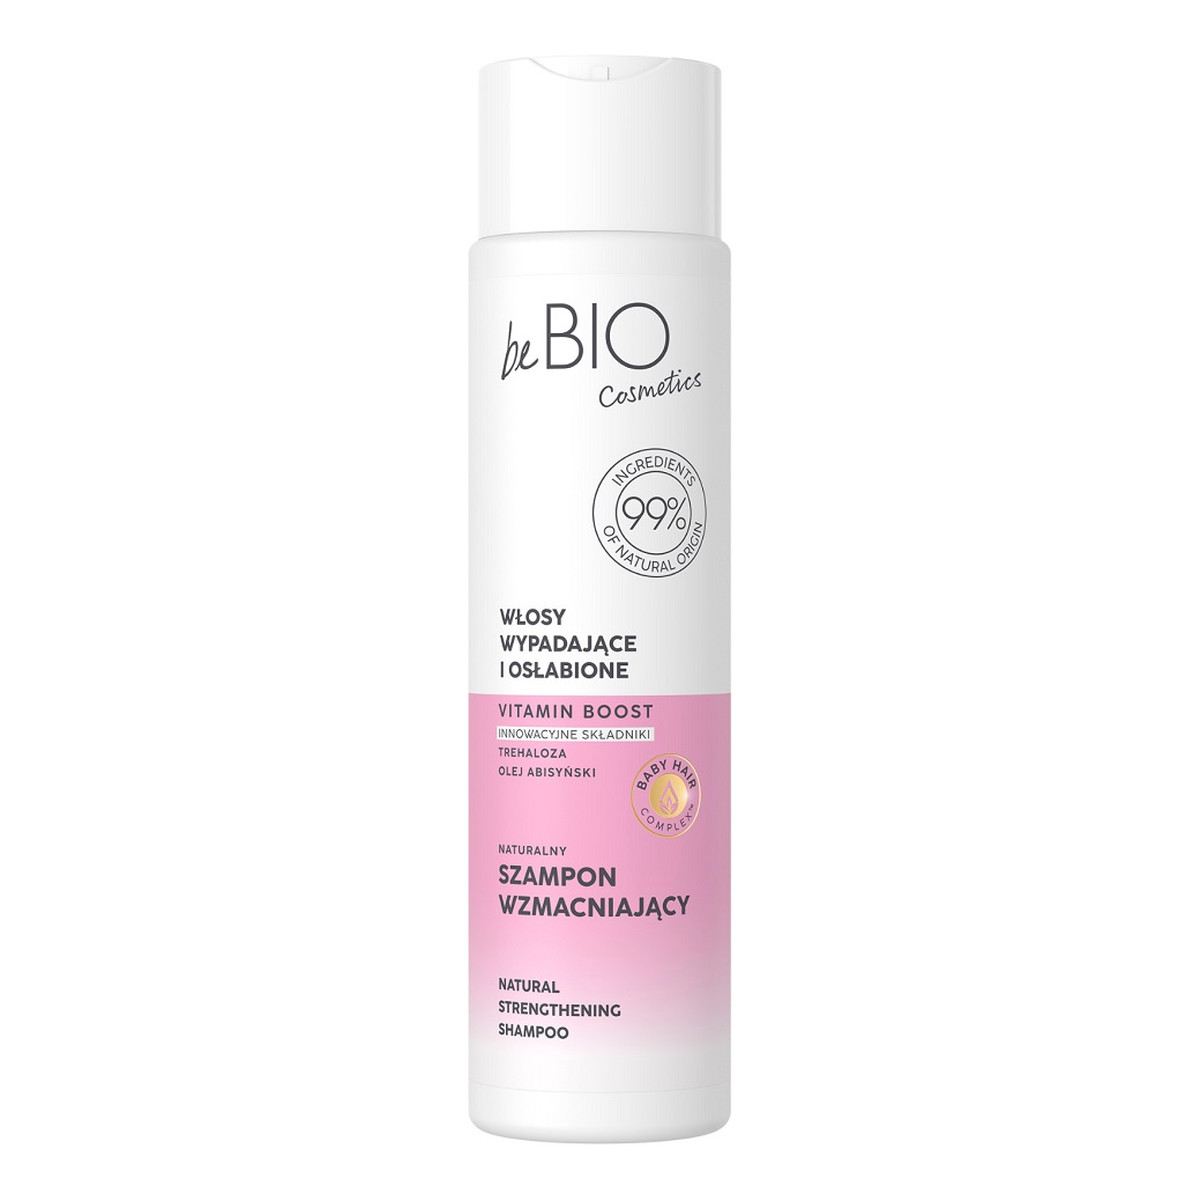 Be Bio Ewa Chodakowska Baby hair complex naturalny szampon wzmacniający do włosów wypadających i osłabionych 300ml